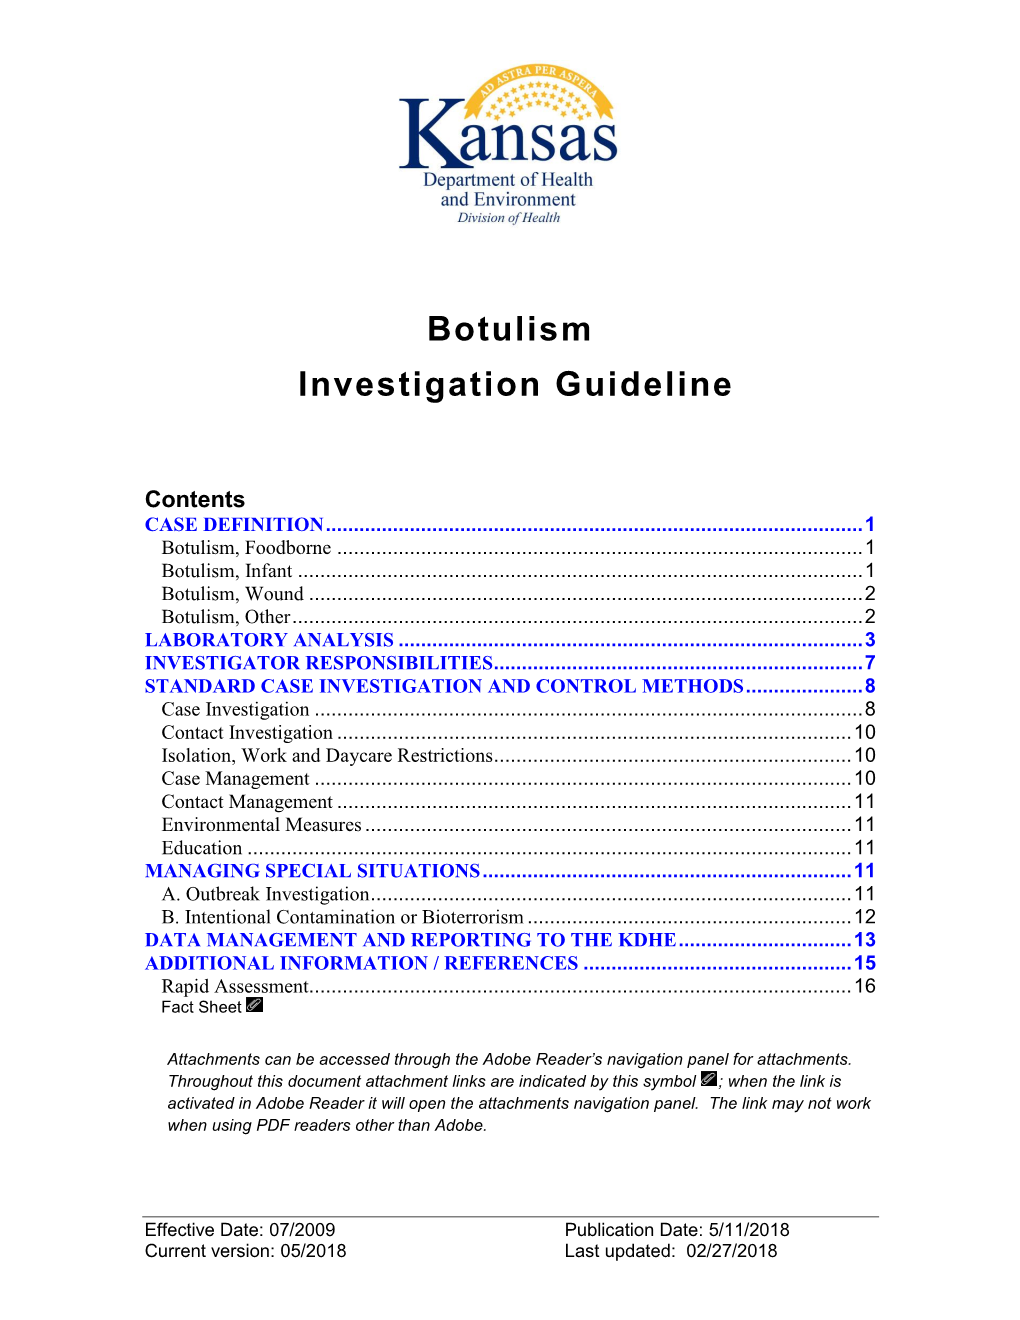 Botulism Investigation Guideline